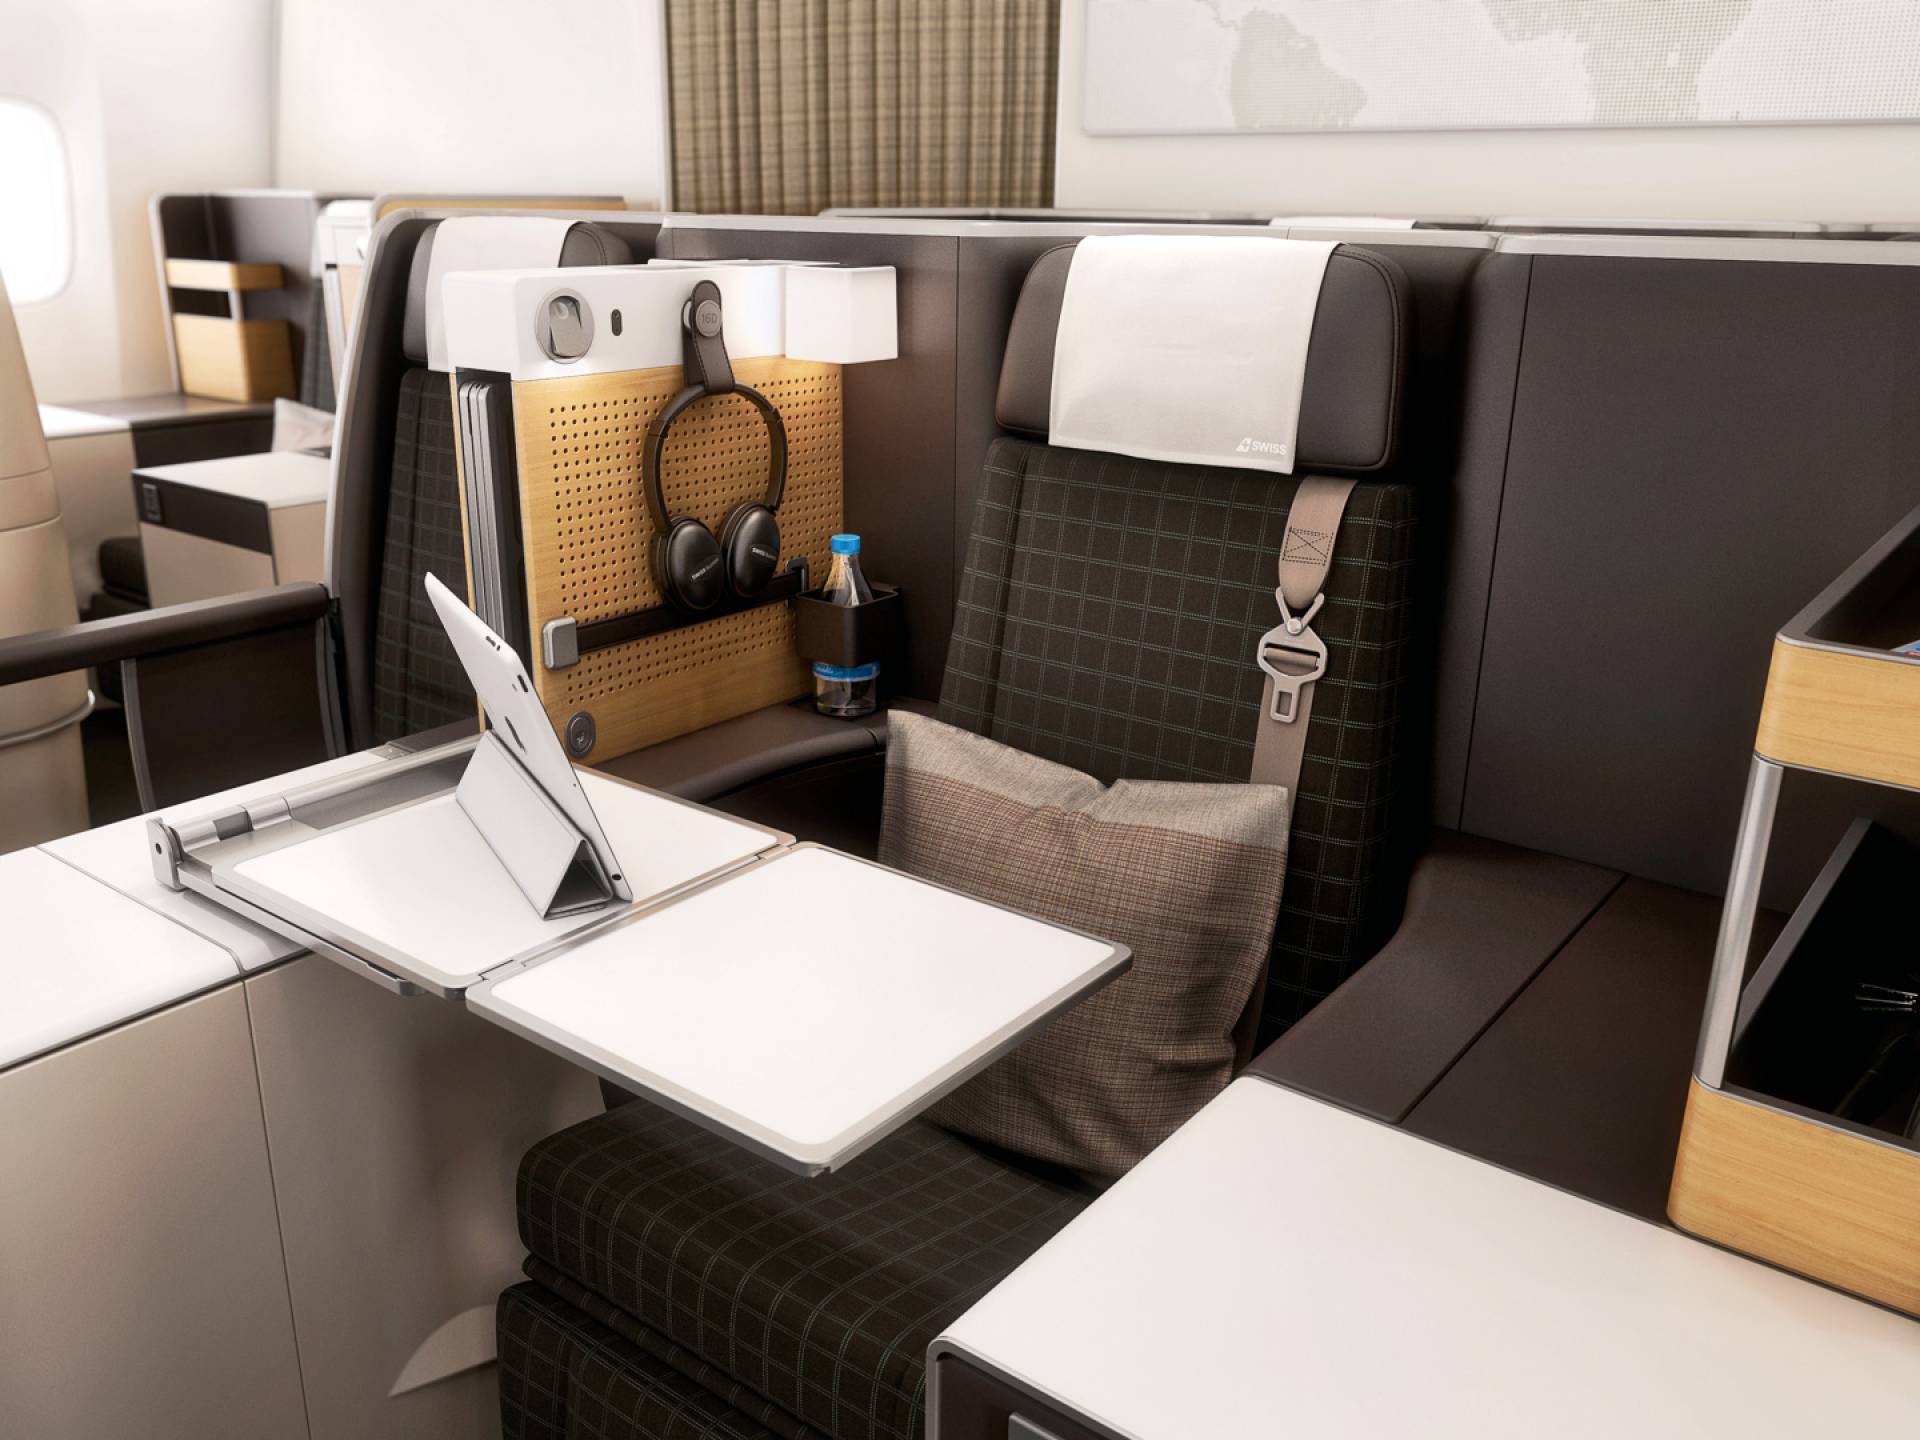 Swiss Air business class seat